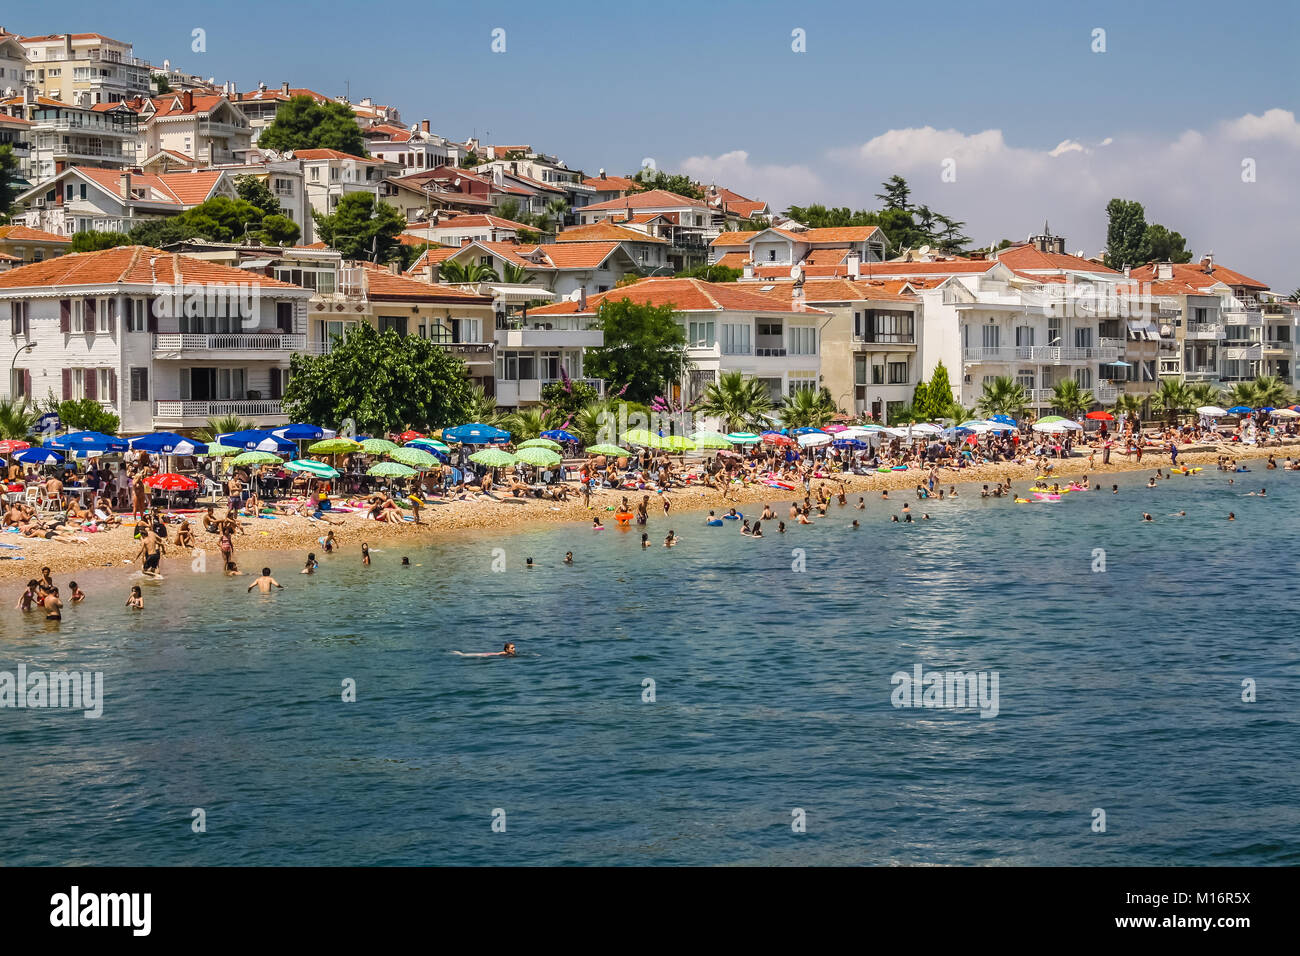 Kinaliada, îles des Princes, Istanbul, 13 juillet 2010 : Vue de la plage bondée en été. Banque D'Images